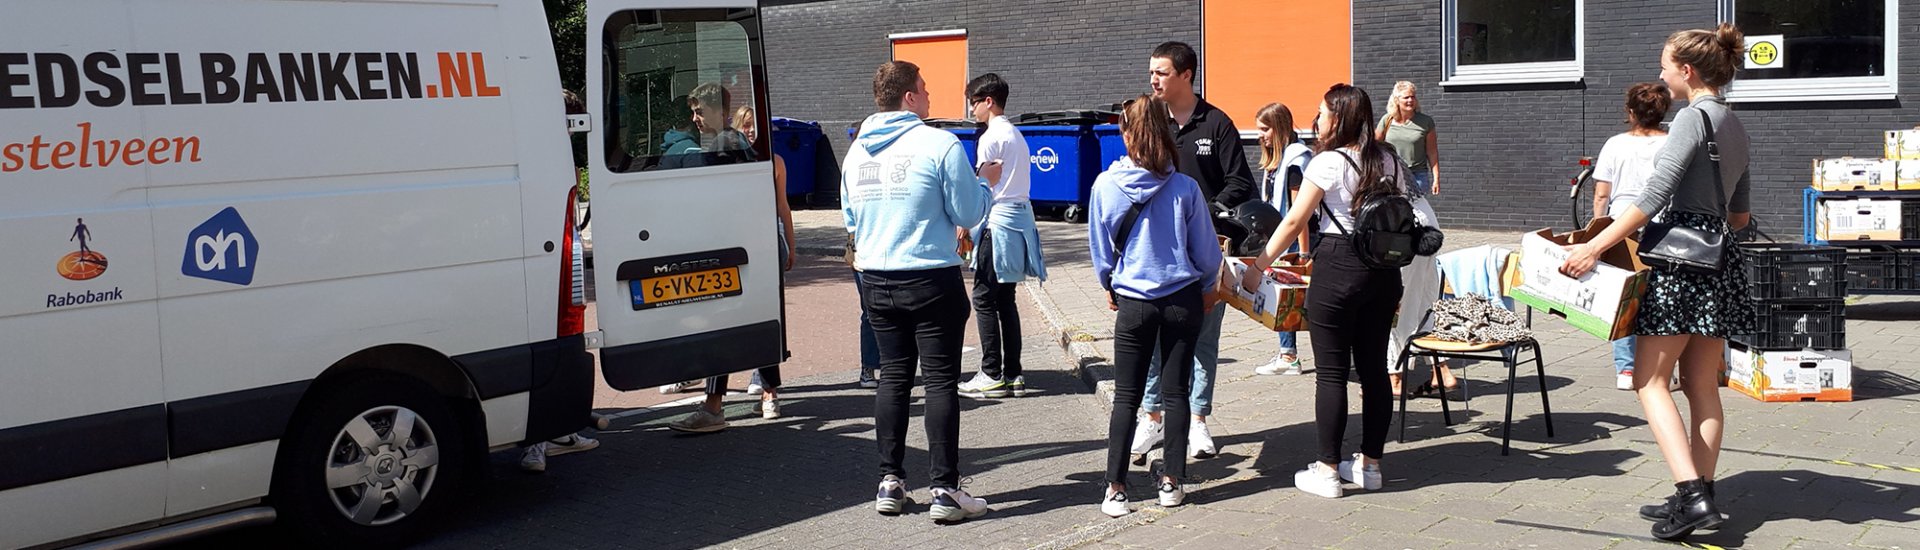 Leerlingen laden de opbrengst van de actie in een busje van de Voedselbank.